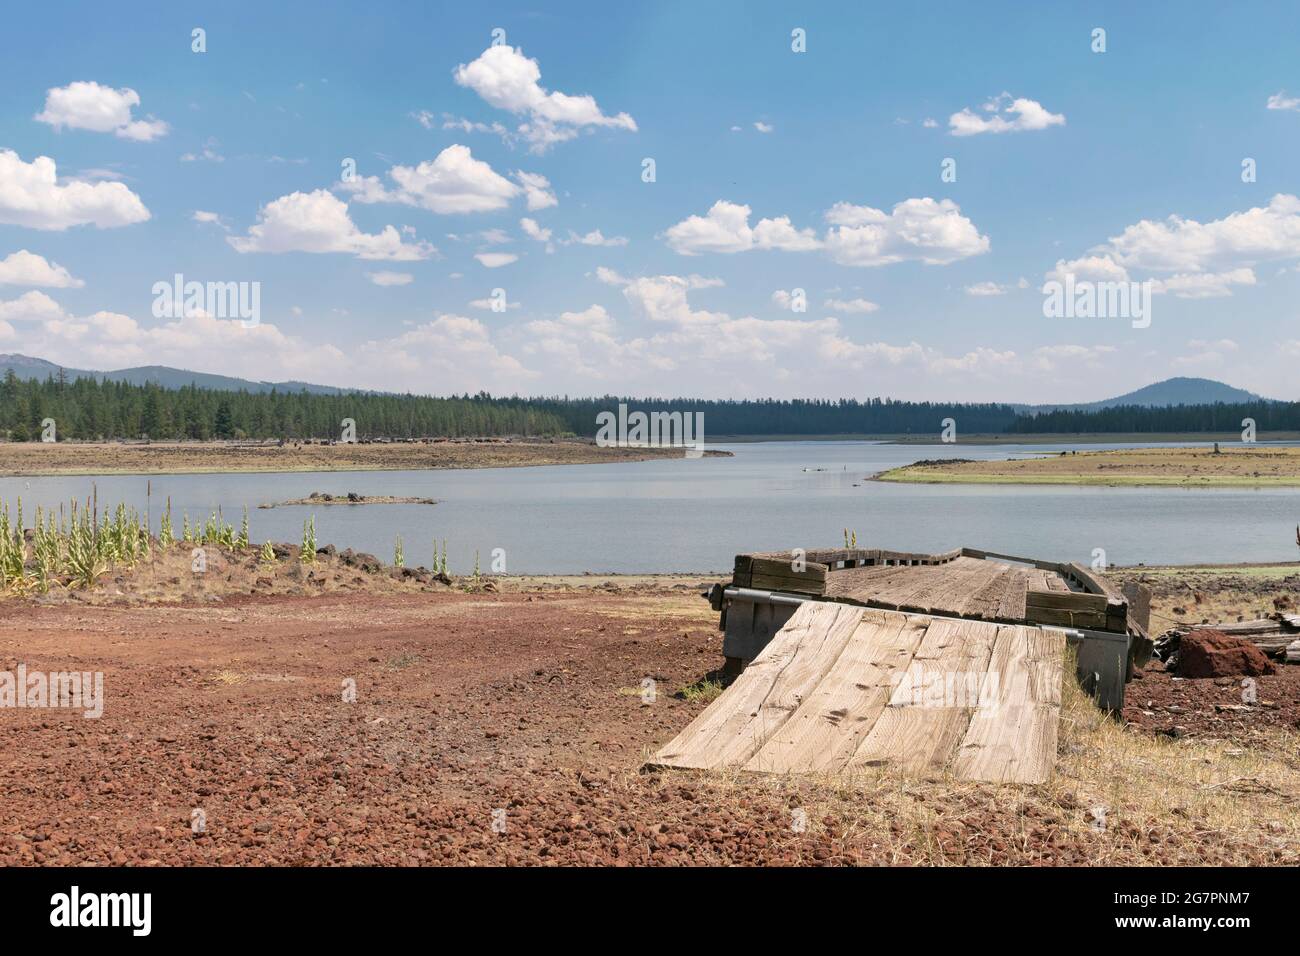 Thompson Reservoir in Lake County, Oregon, ist während extremer Dürre auf niedrigem Niveau. Ein Bootsanleger bleibt weit vom zurücktretenden Ufer entfernt. Stockfoto